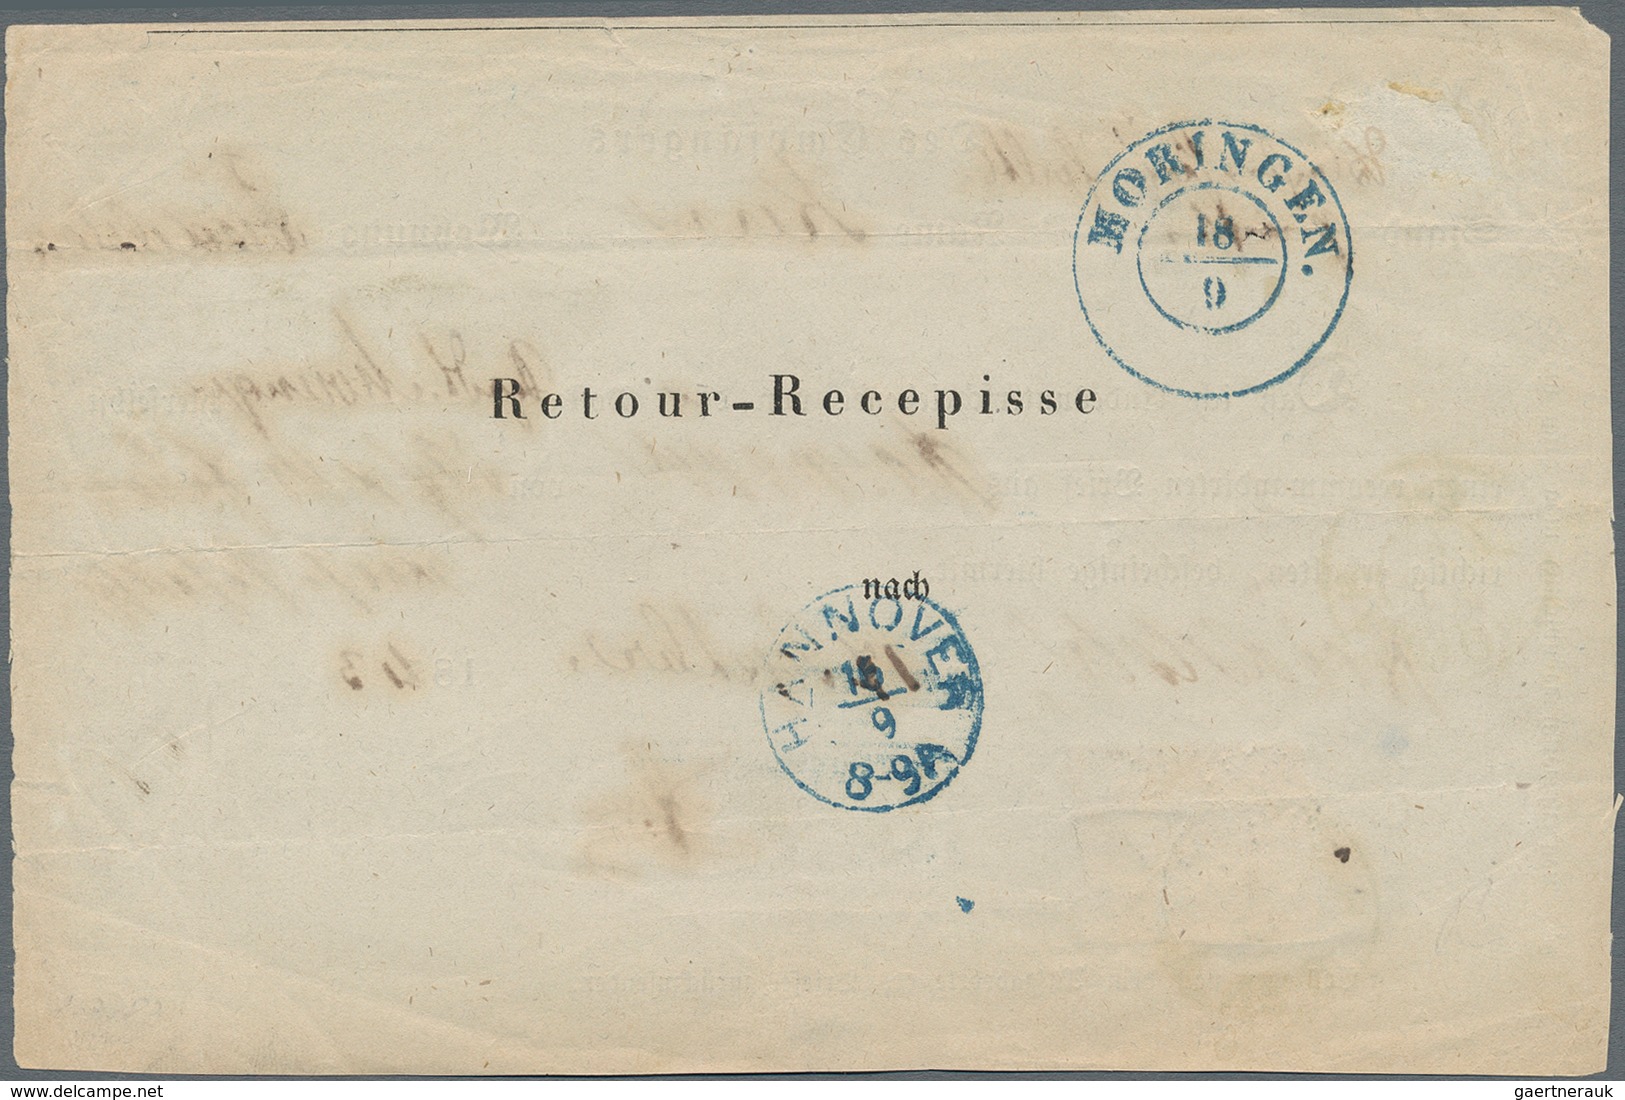 Hannover - Marken Und Briefe: 1863, 1 Groschen Karmin Als Gebührenmarke Auf Rückschein Aus Moringen - Hanover